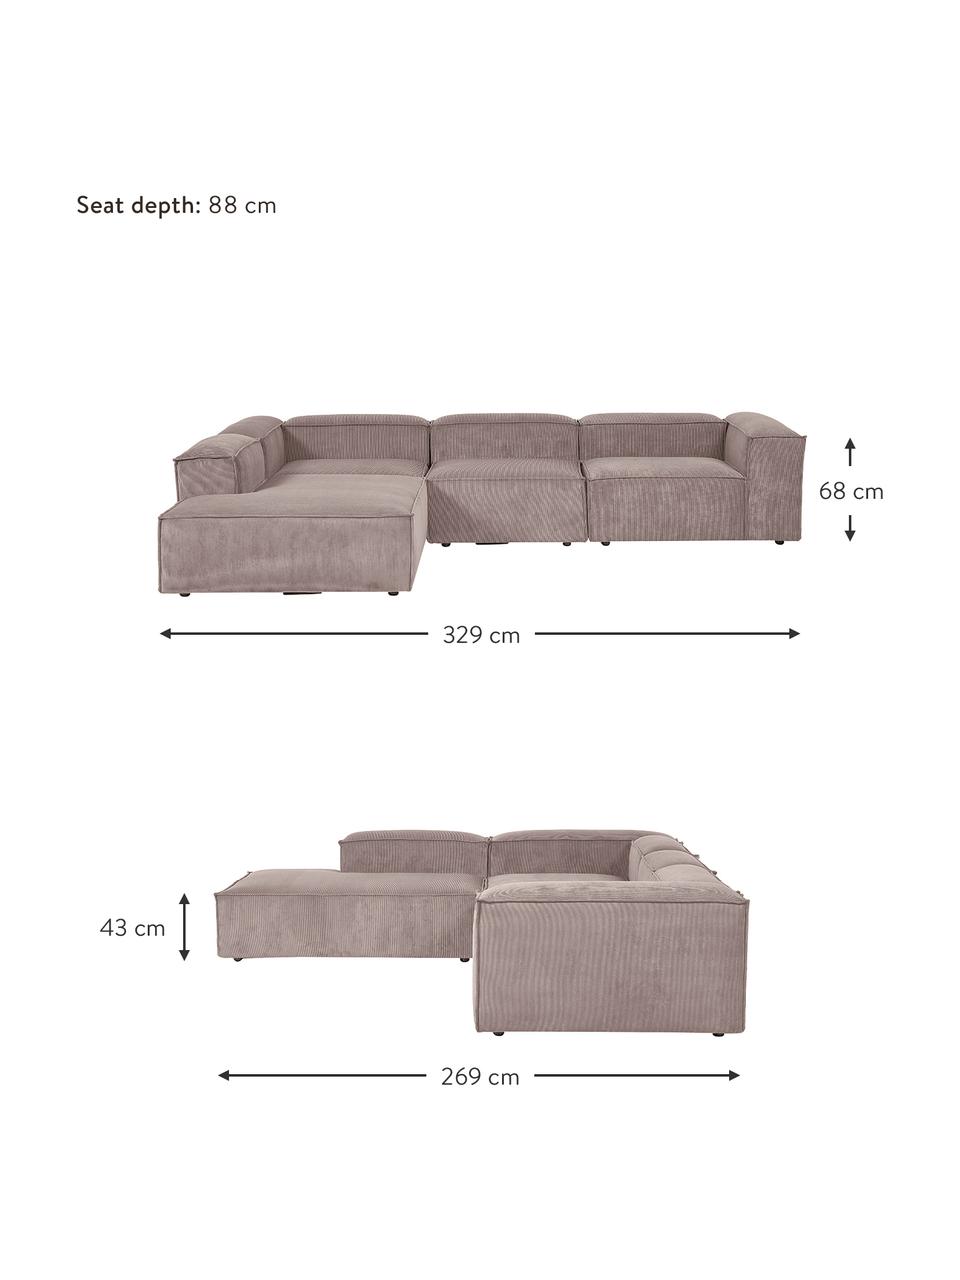 Narożna sofa modułowa XL ze sztruksu Lennon, Tapicerka: sztruks (92% poliester, 8, Stelaż: lite drewno, sklejka, Nogi: tworzywo sztuczne, Brązowy sztruks, S 329 x W 68 cm, lewostronna